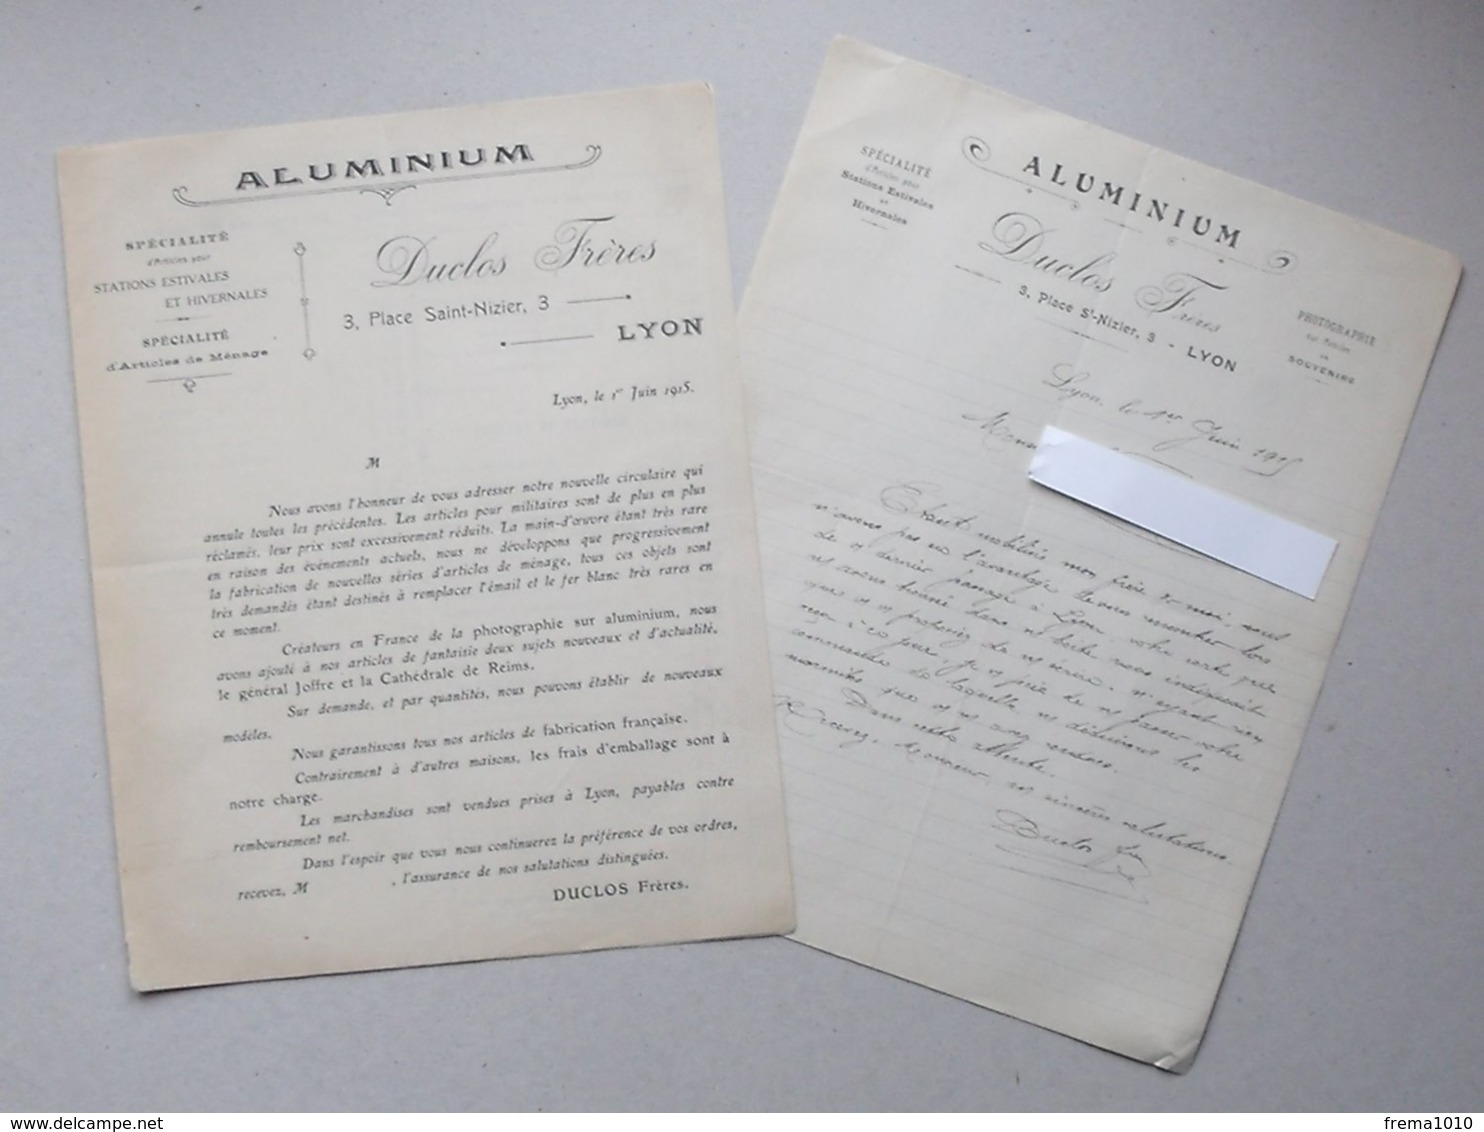 LYON - Publicite + Lettre à En-tête 1915 ALUMINIUM Articles Station Estivale Hivernale Photographie Sur Souvenir -DUCLOS - 1900 – 1949